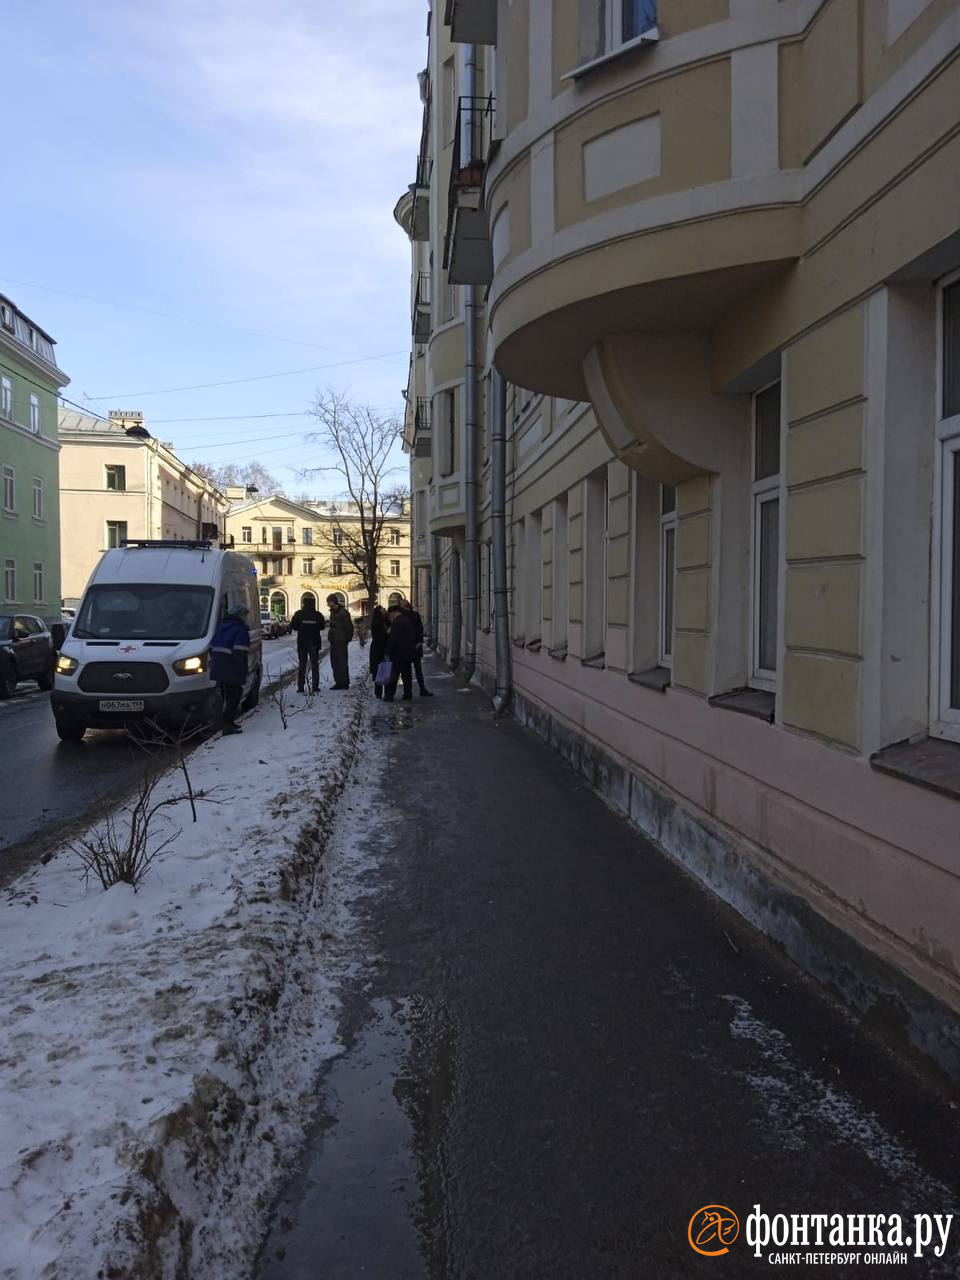 Снег с крыши или скользкий тротуар? В Петербурге пенсионерку увезли в больницу после прогулки под окнами дома